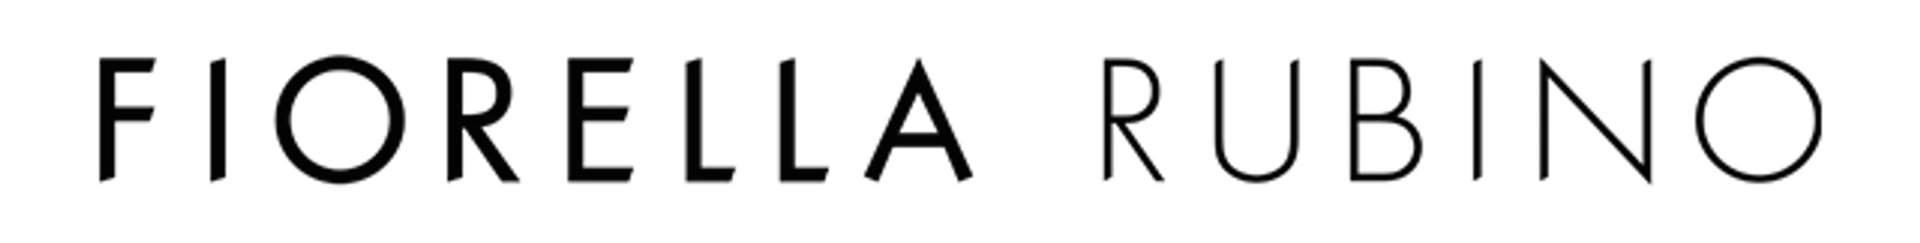 FIORELLA RUBINO logo de catálogo